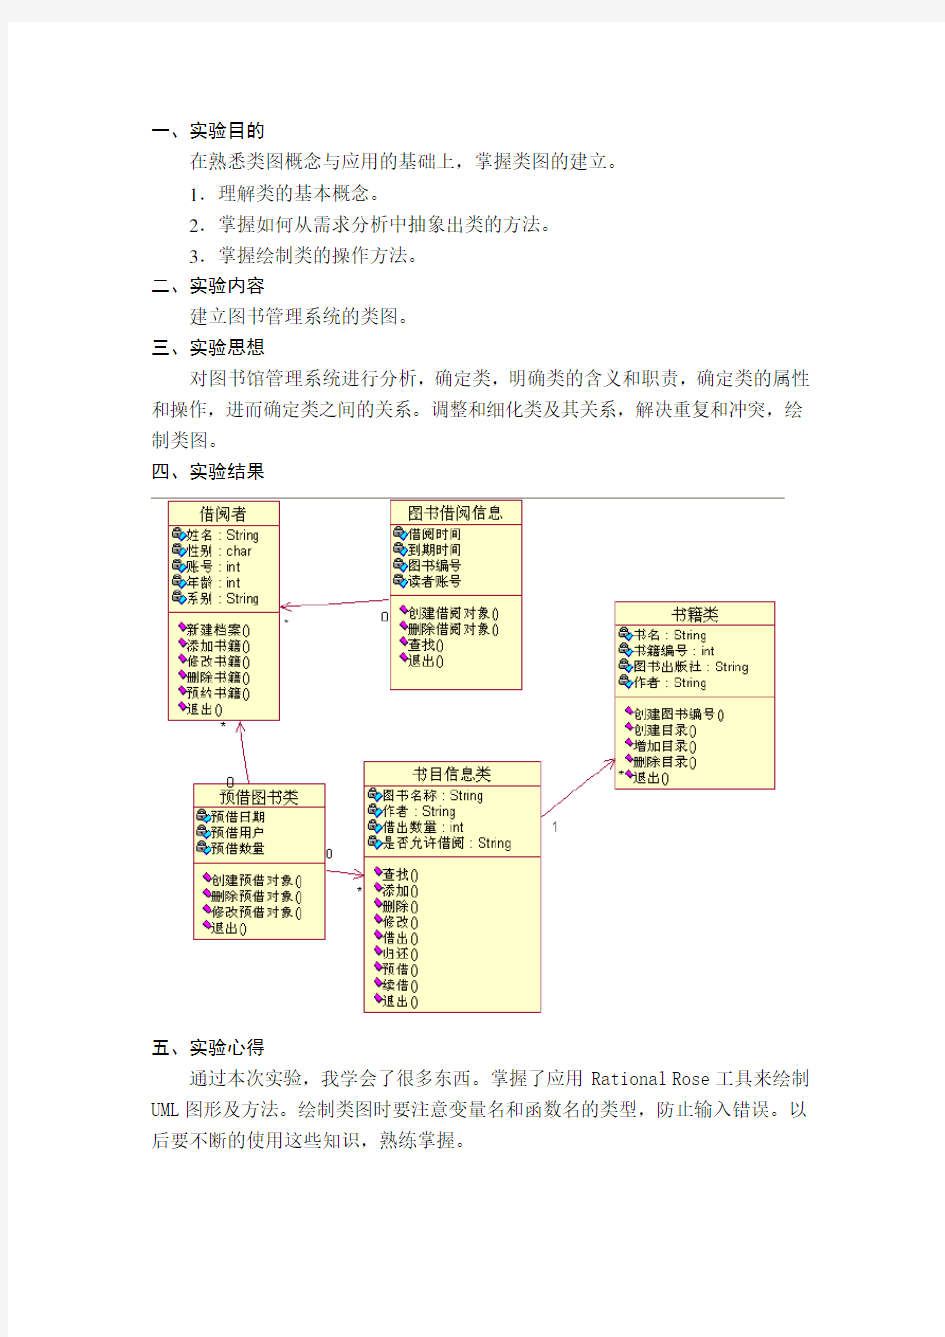 图书管理系统类图(UML)